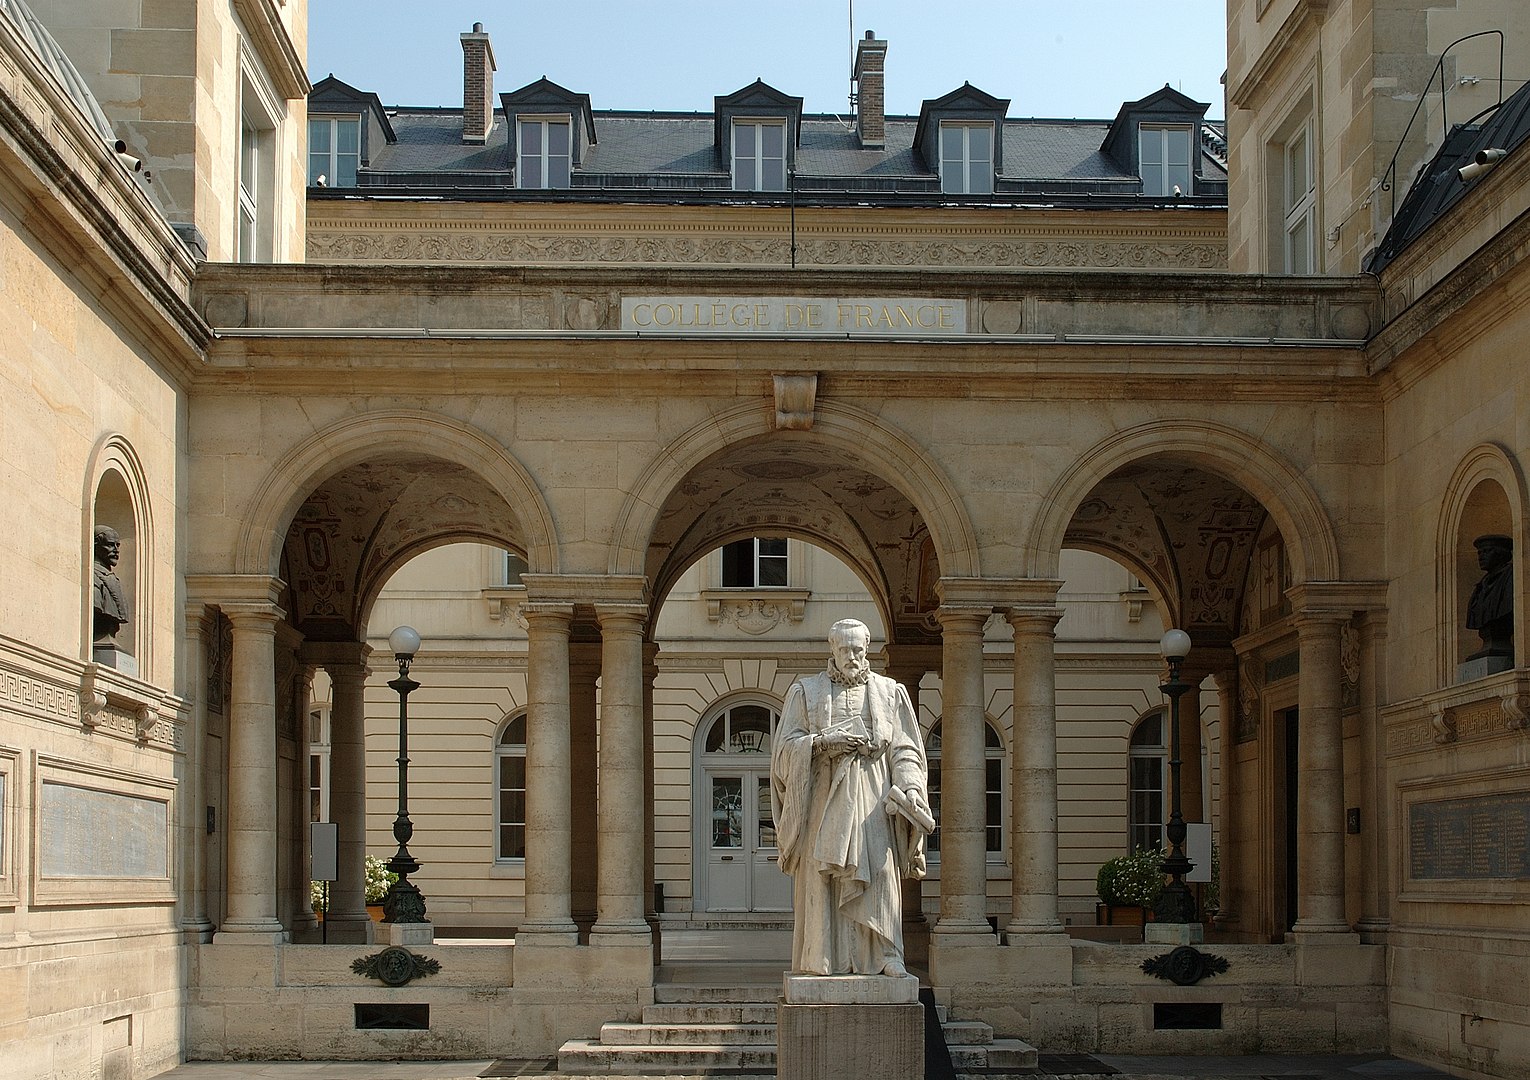 1530px College de france